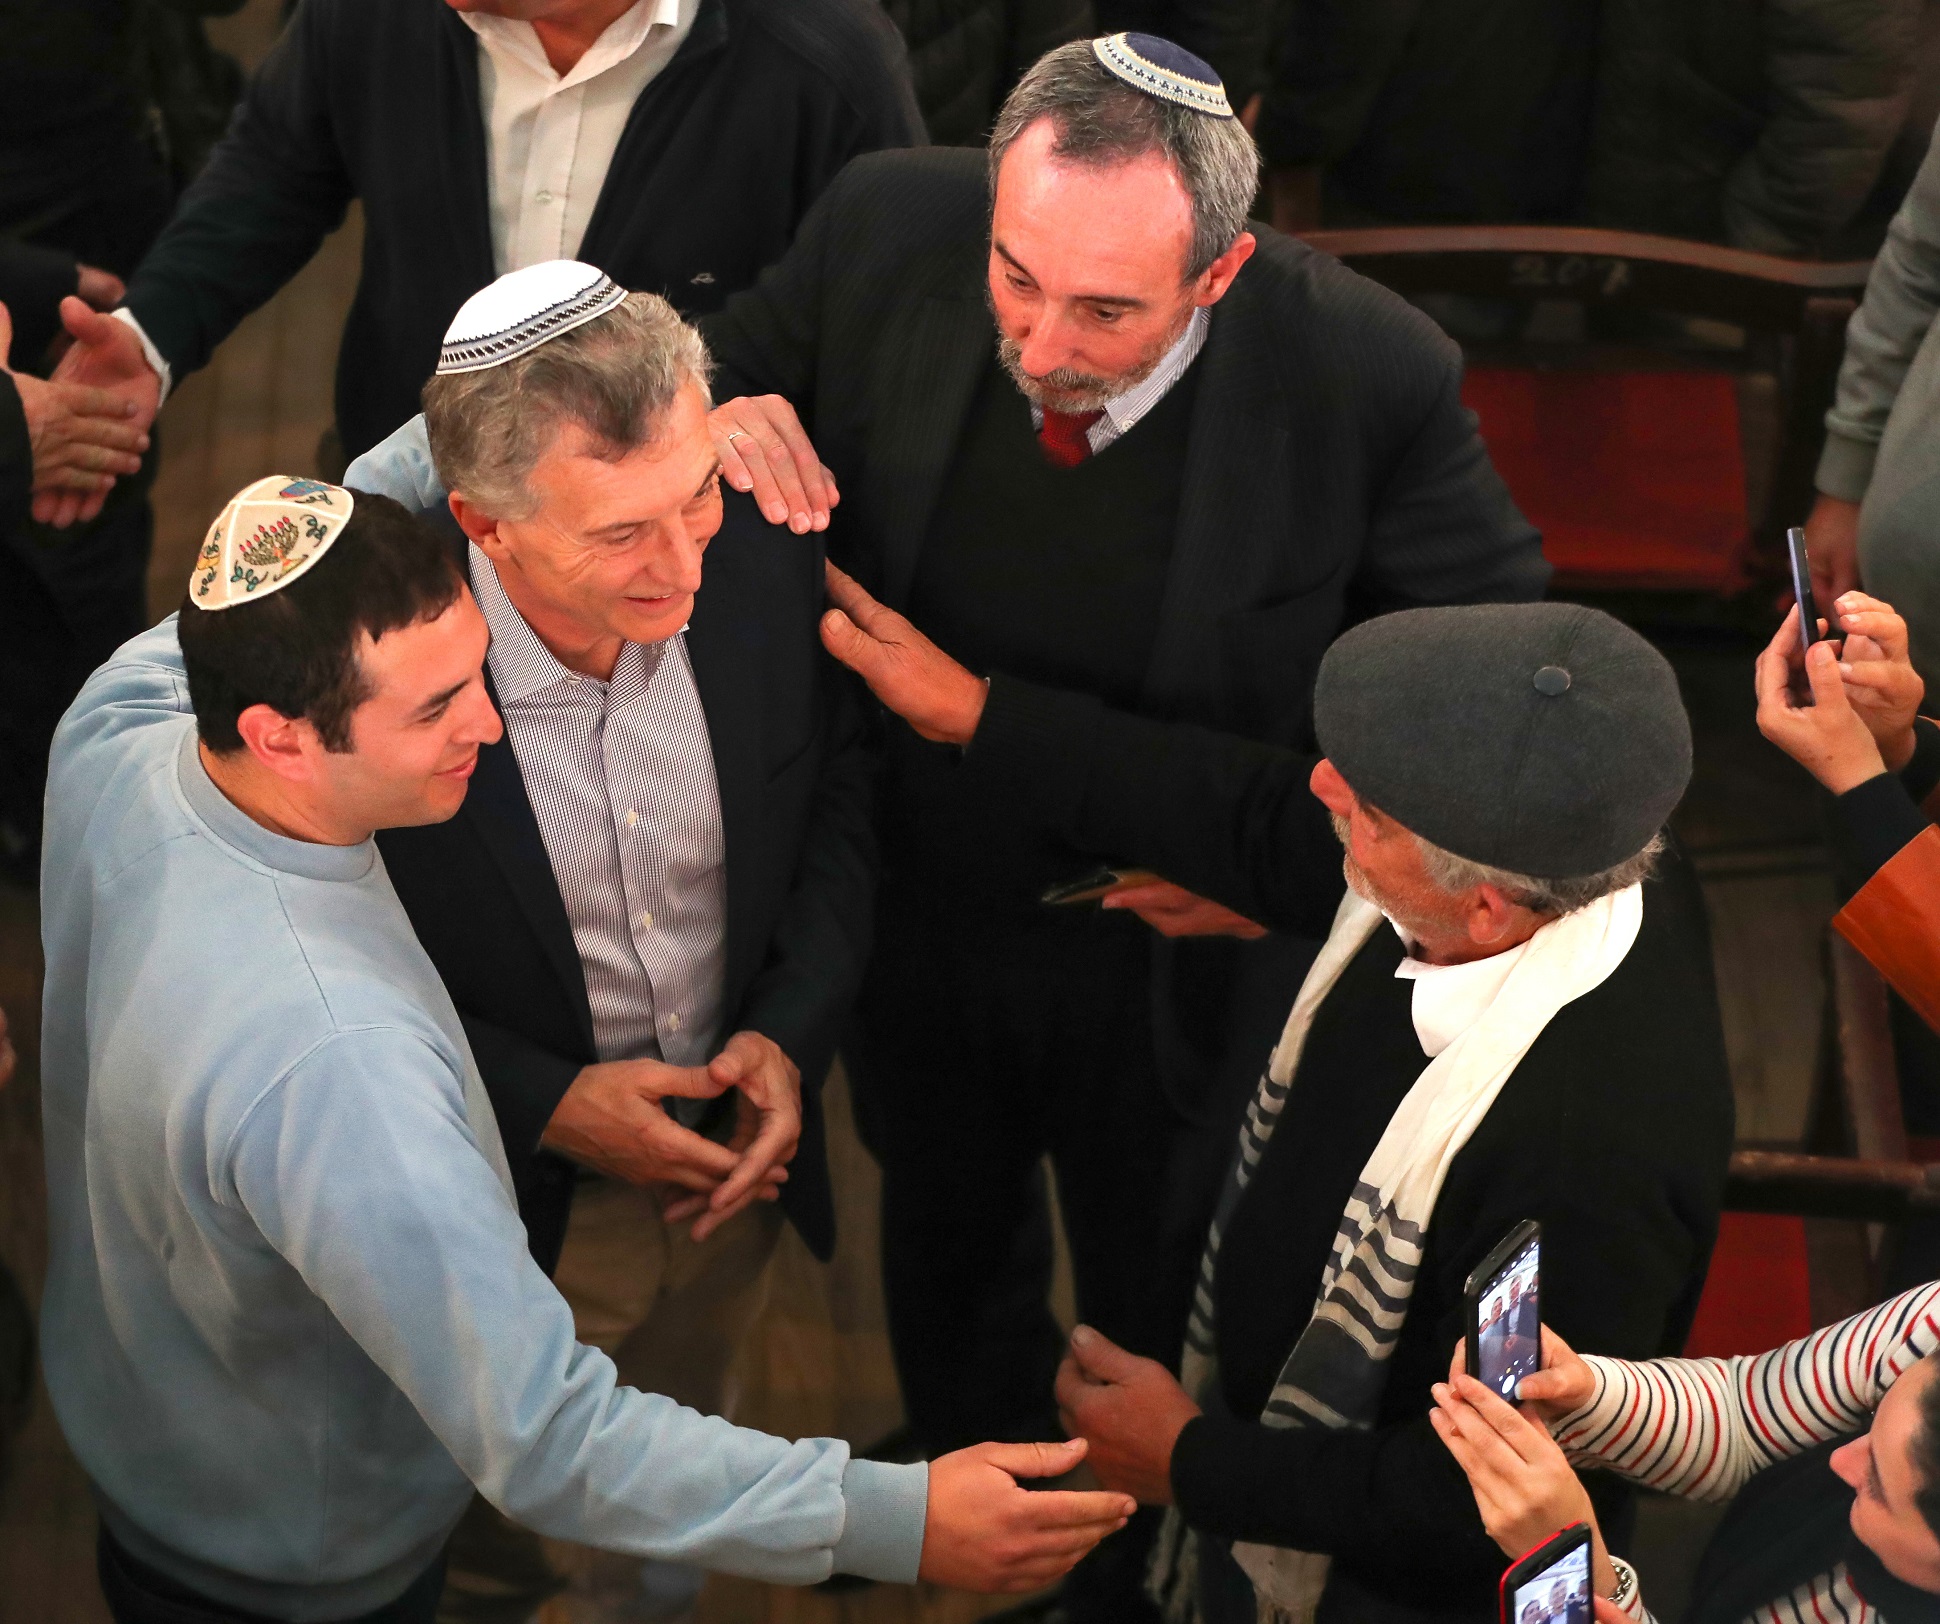 El presidente Macri mantuvo un encuentro con miembros de la comunidad judía en Entre Ríos   